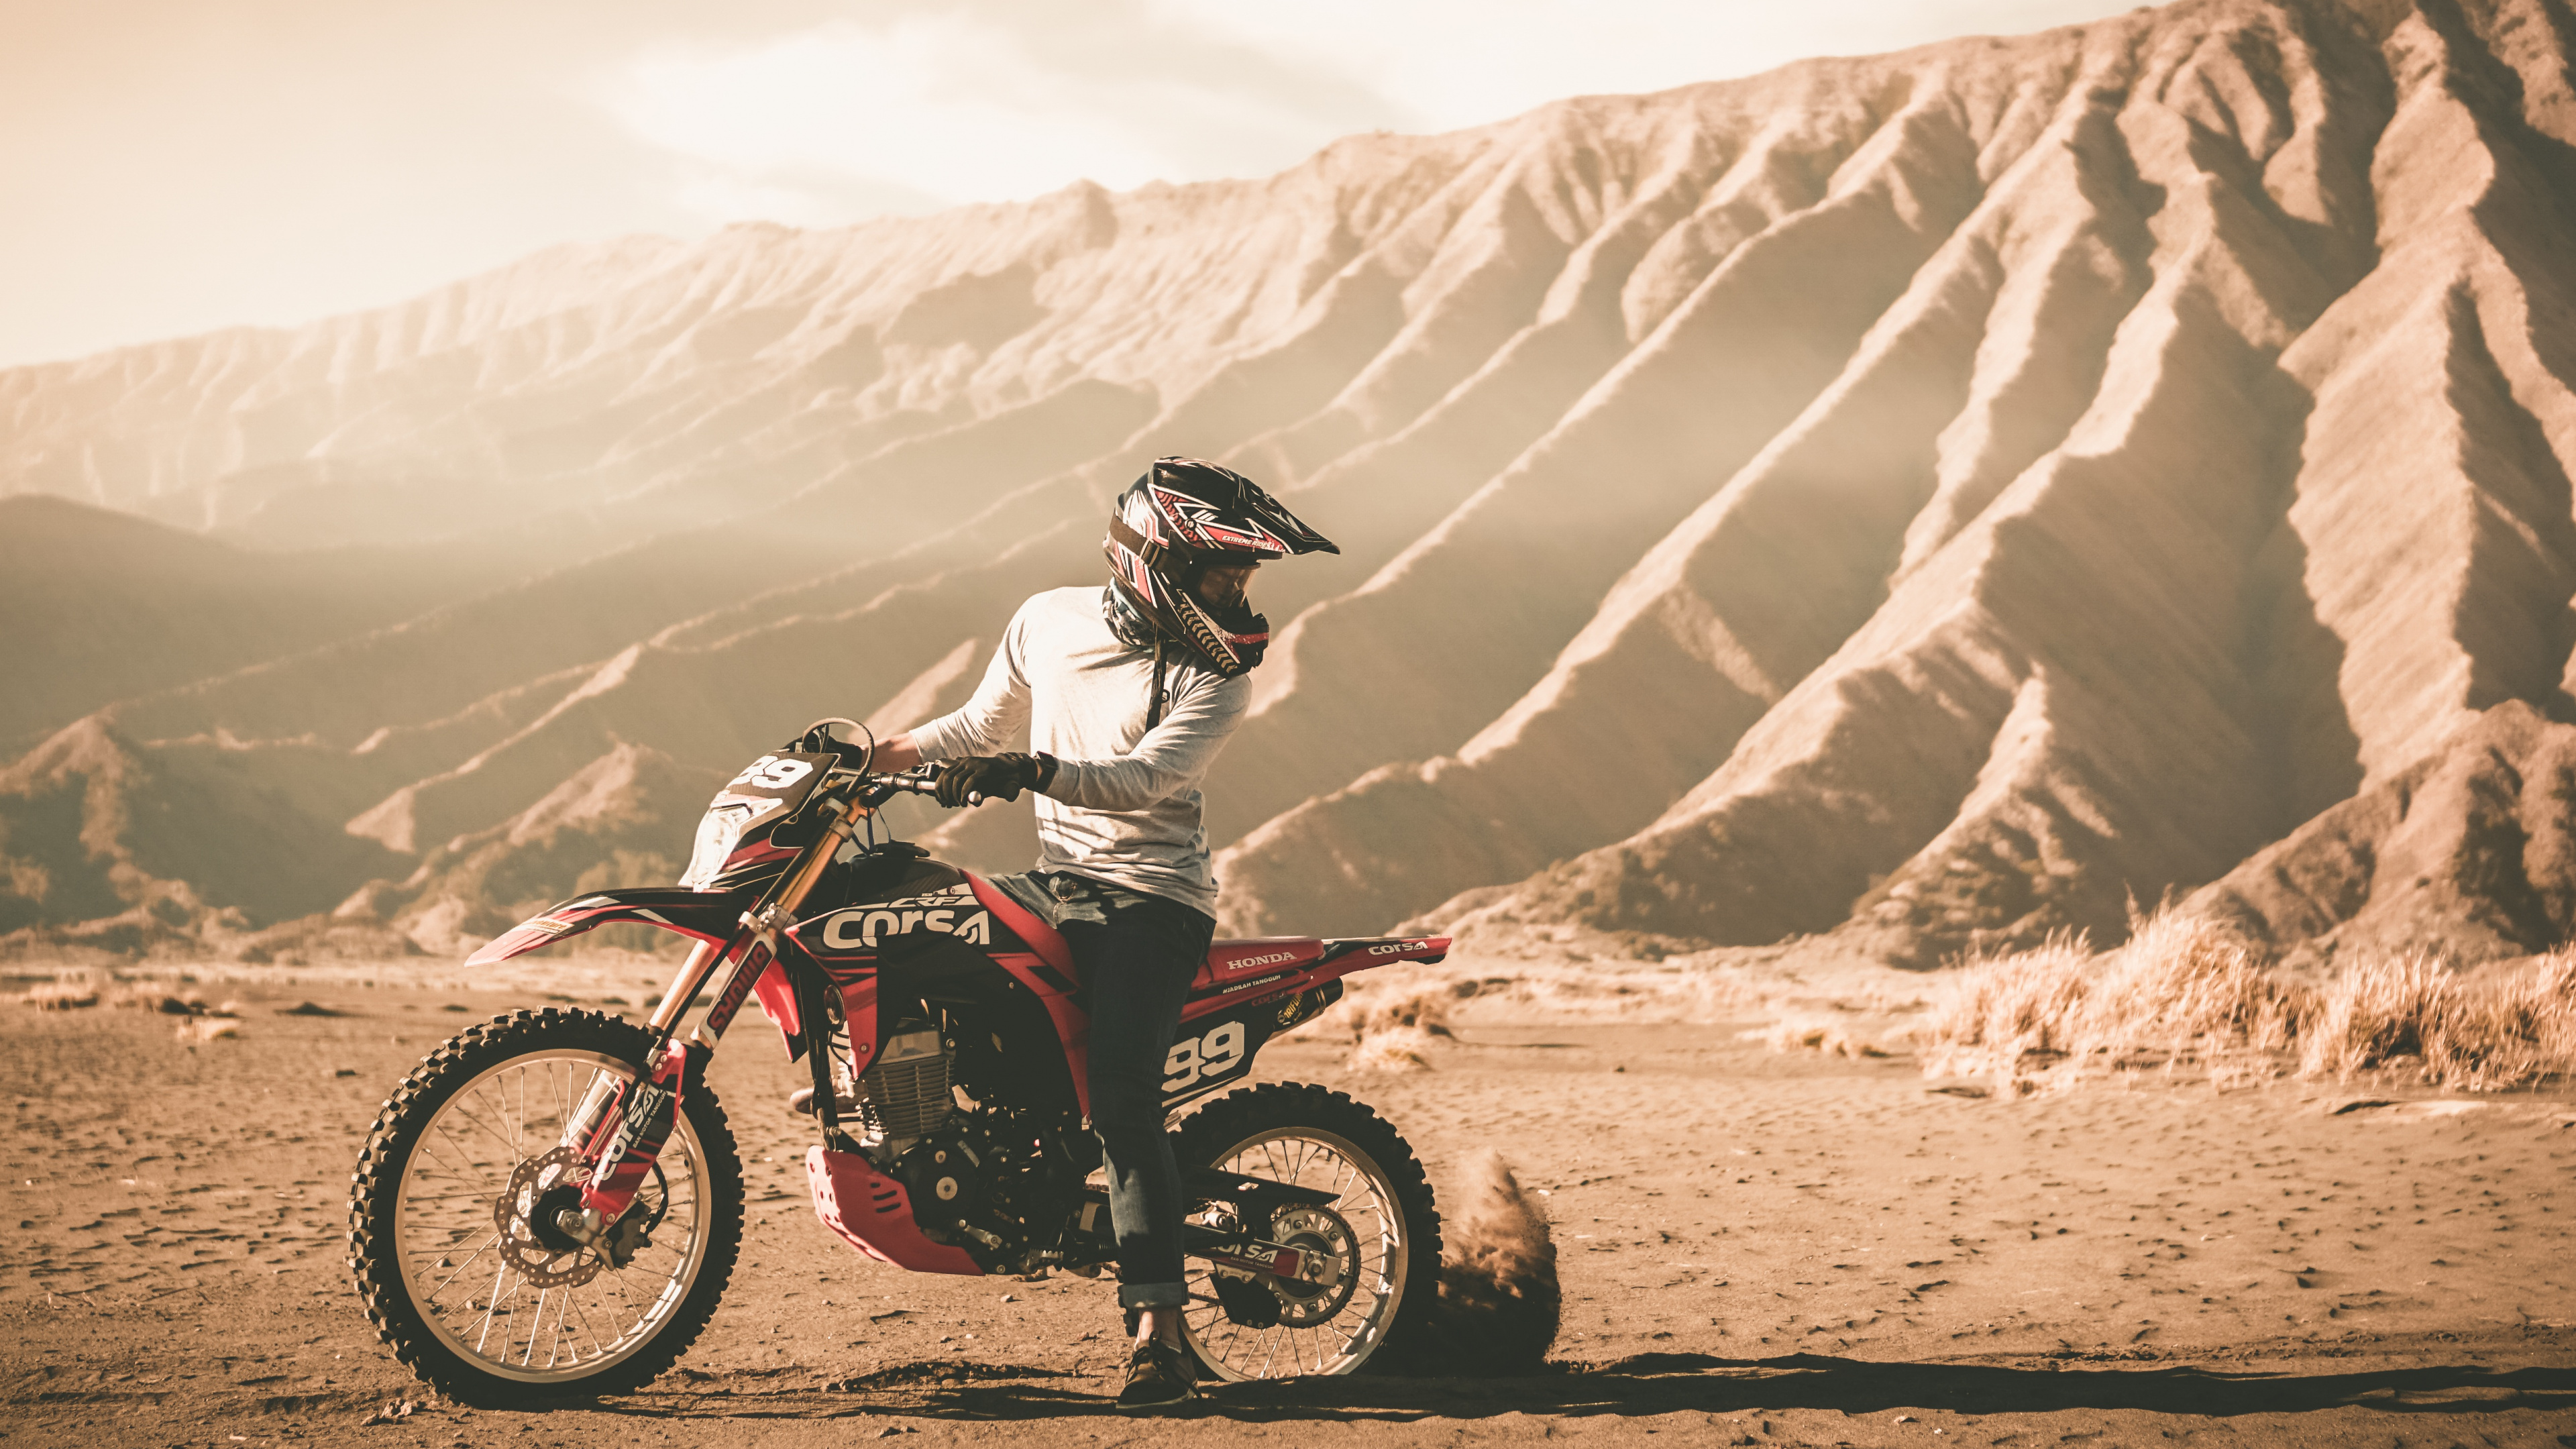 Man Riding Motocross Dirt Bike Sur Chemin de Terre Pendant la Journée. Wallpaper in 3840x2160 Resolution